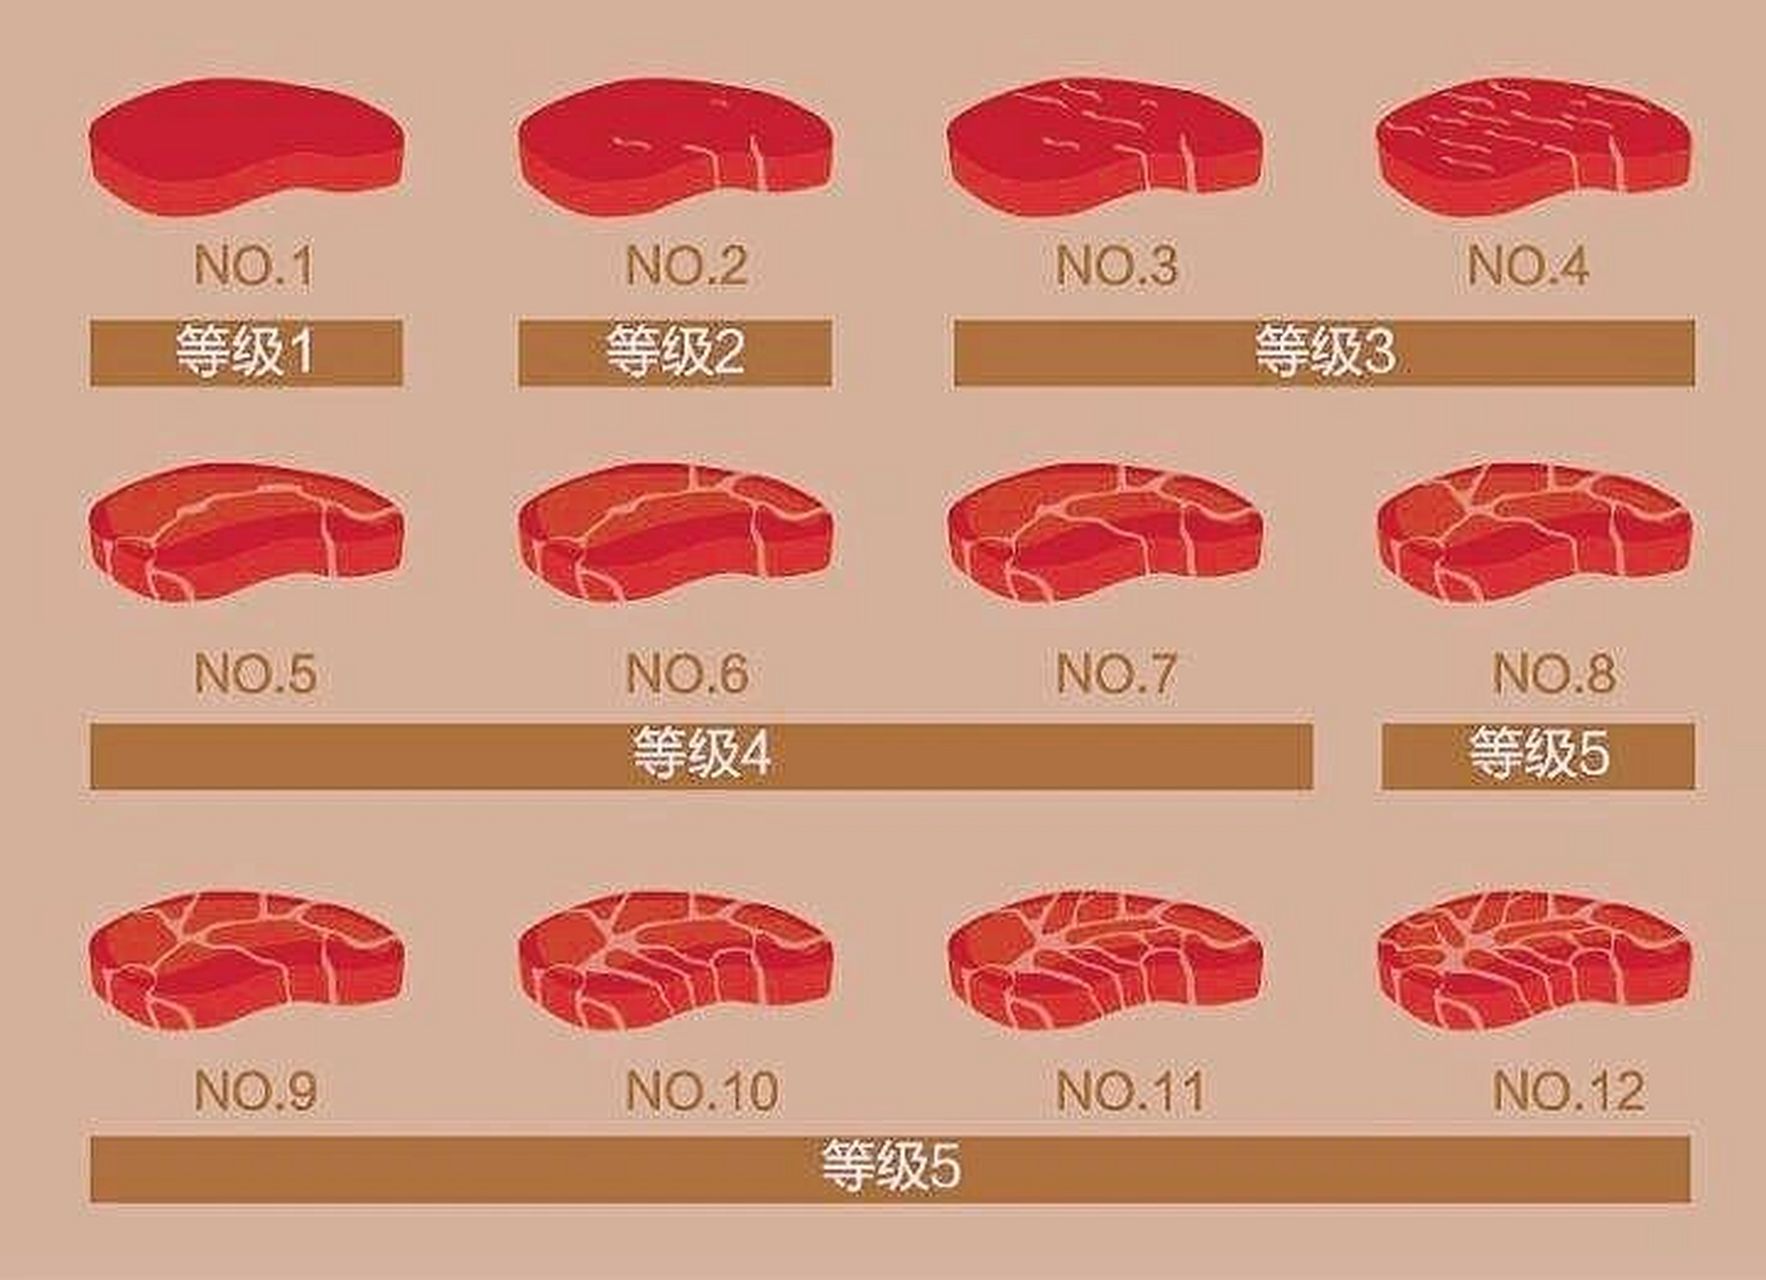 1,日本牛肉以和牛(wagyu)最为出名,也是根据油花分布情况来分级,导抖